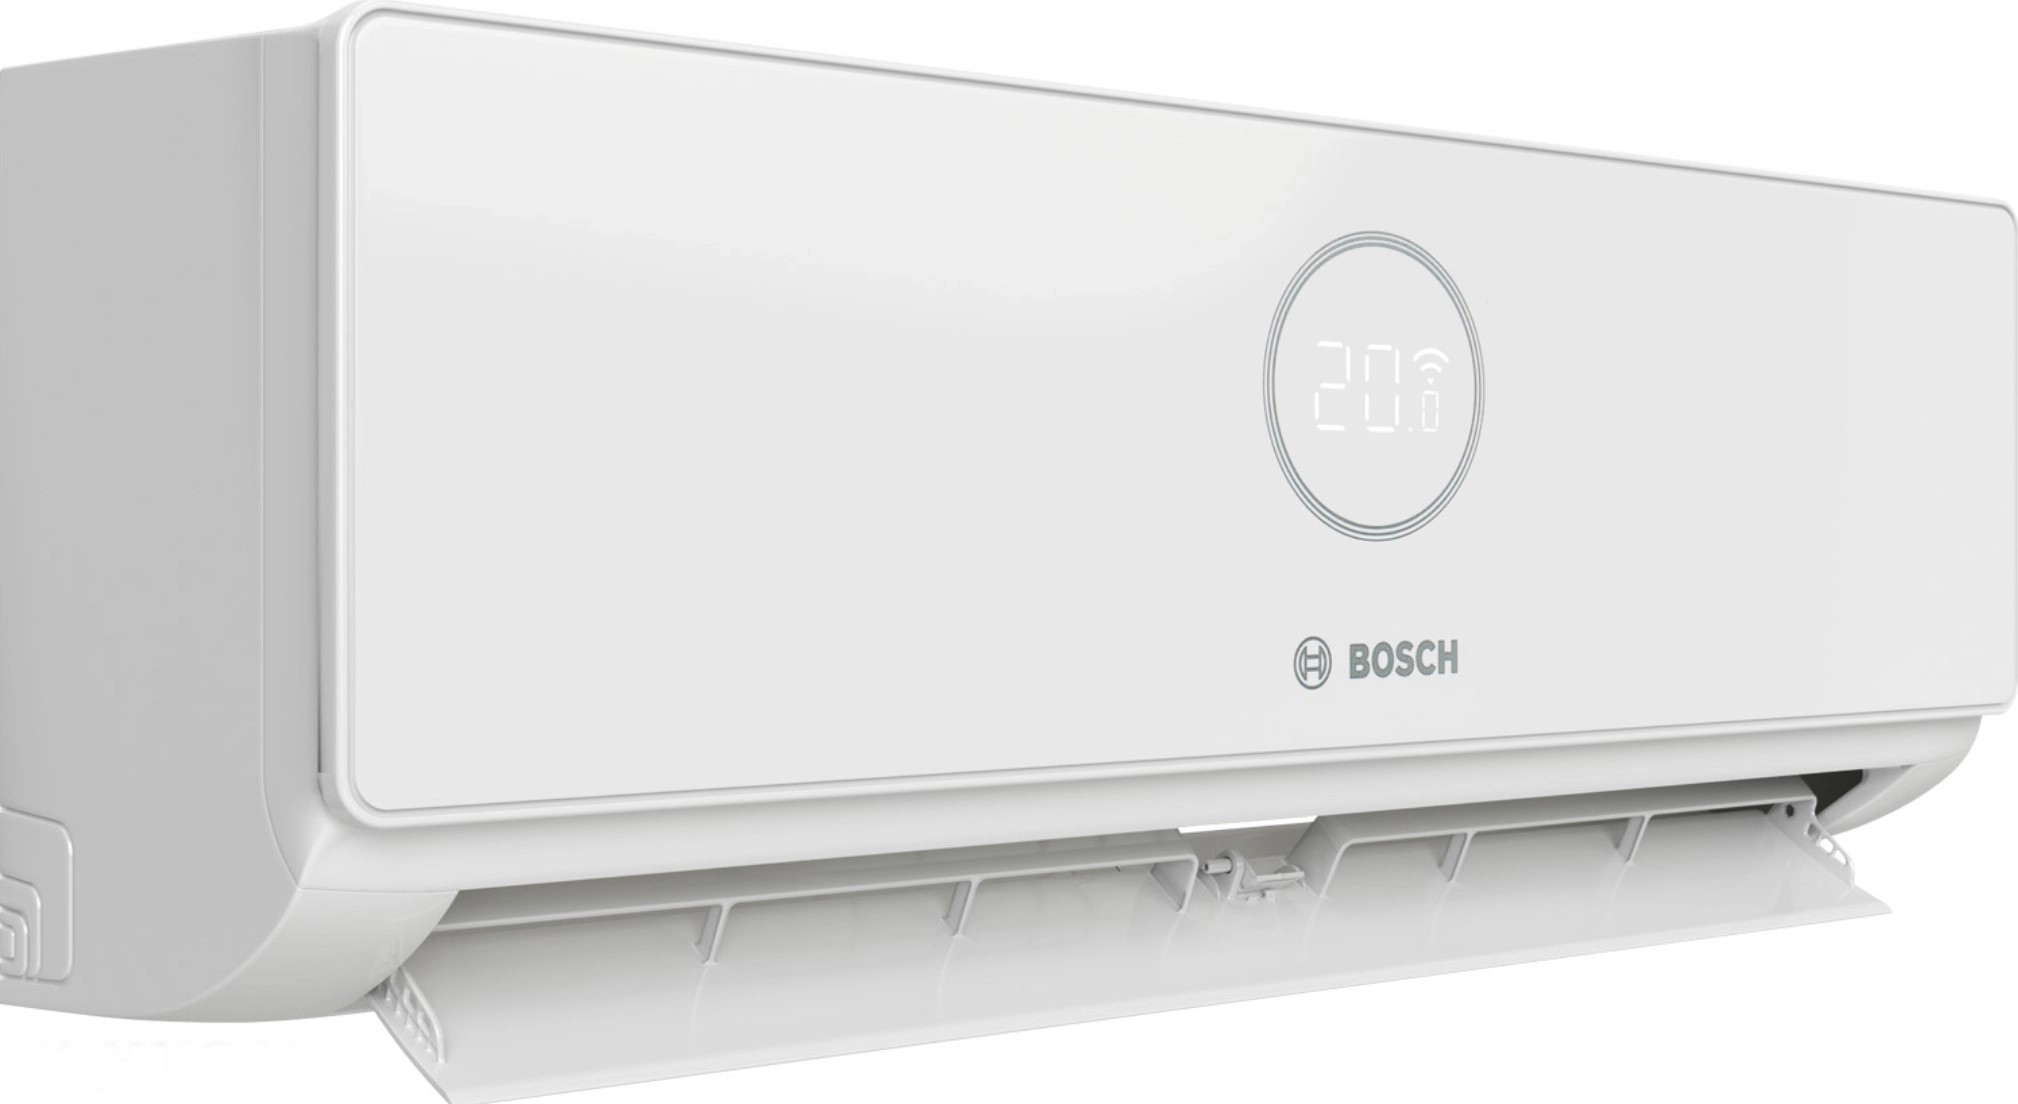 продаём Bosch CL5000i W 35E, 3,5 кВт в Украине - фото 4